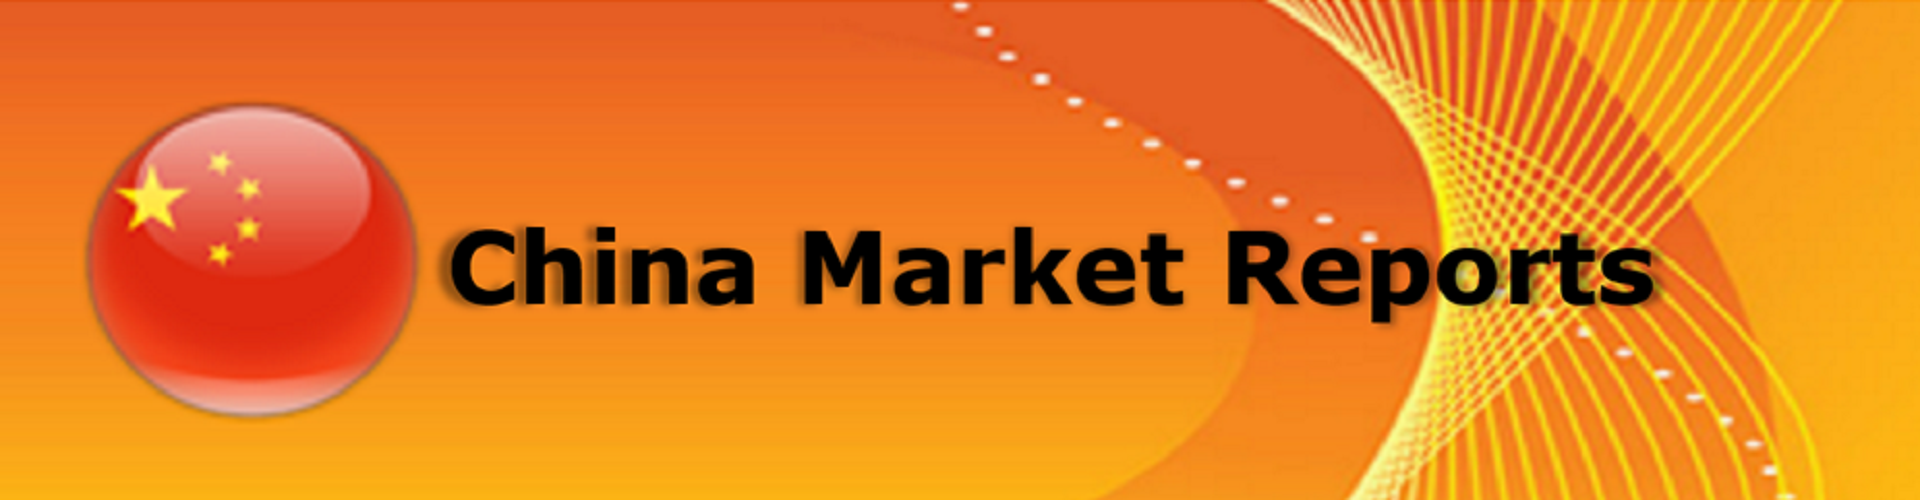 China-market-reports